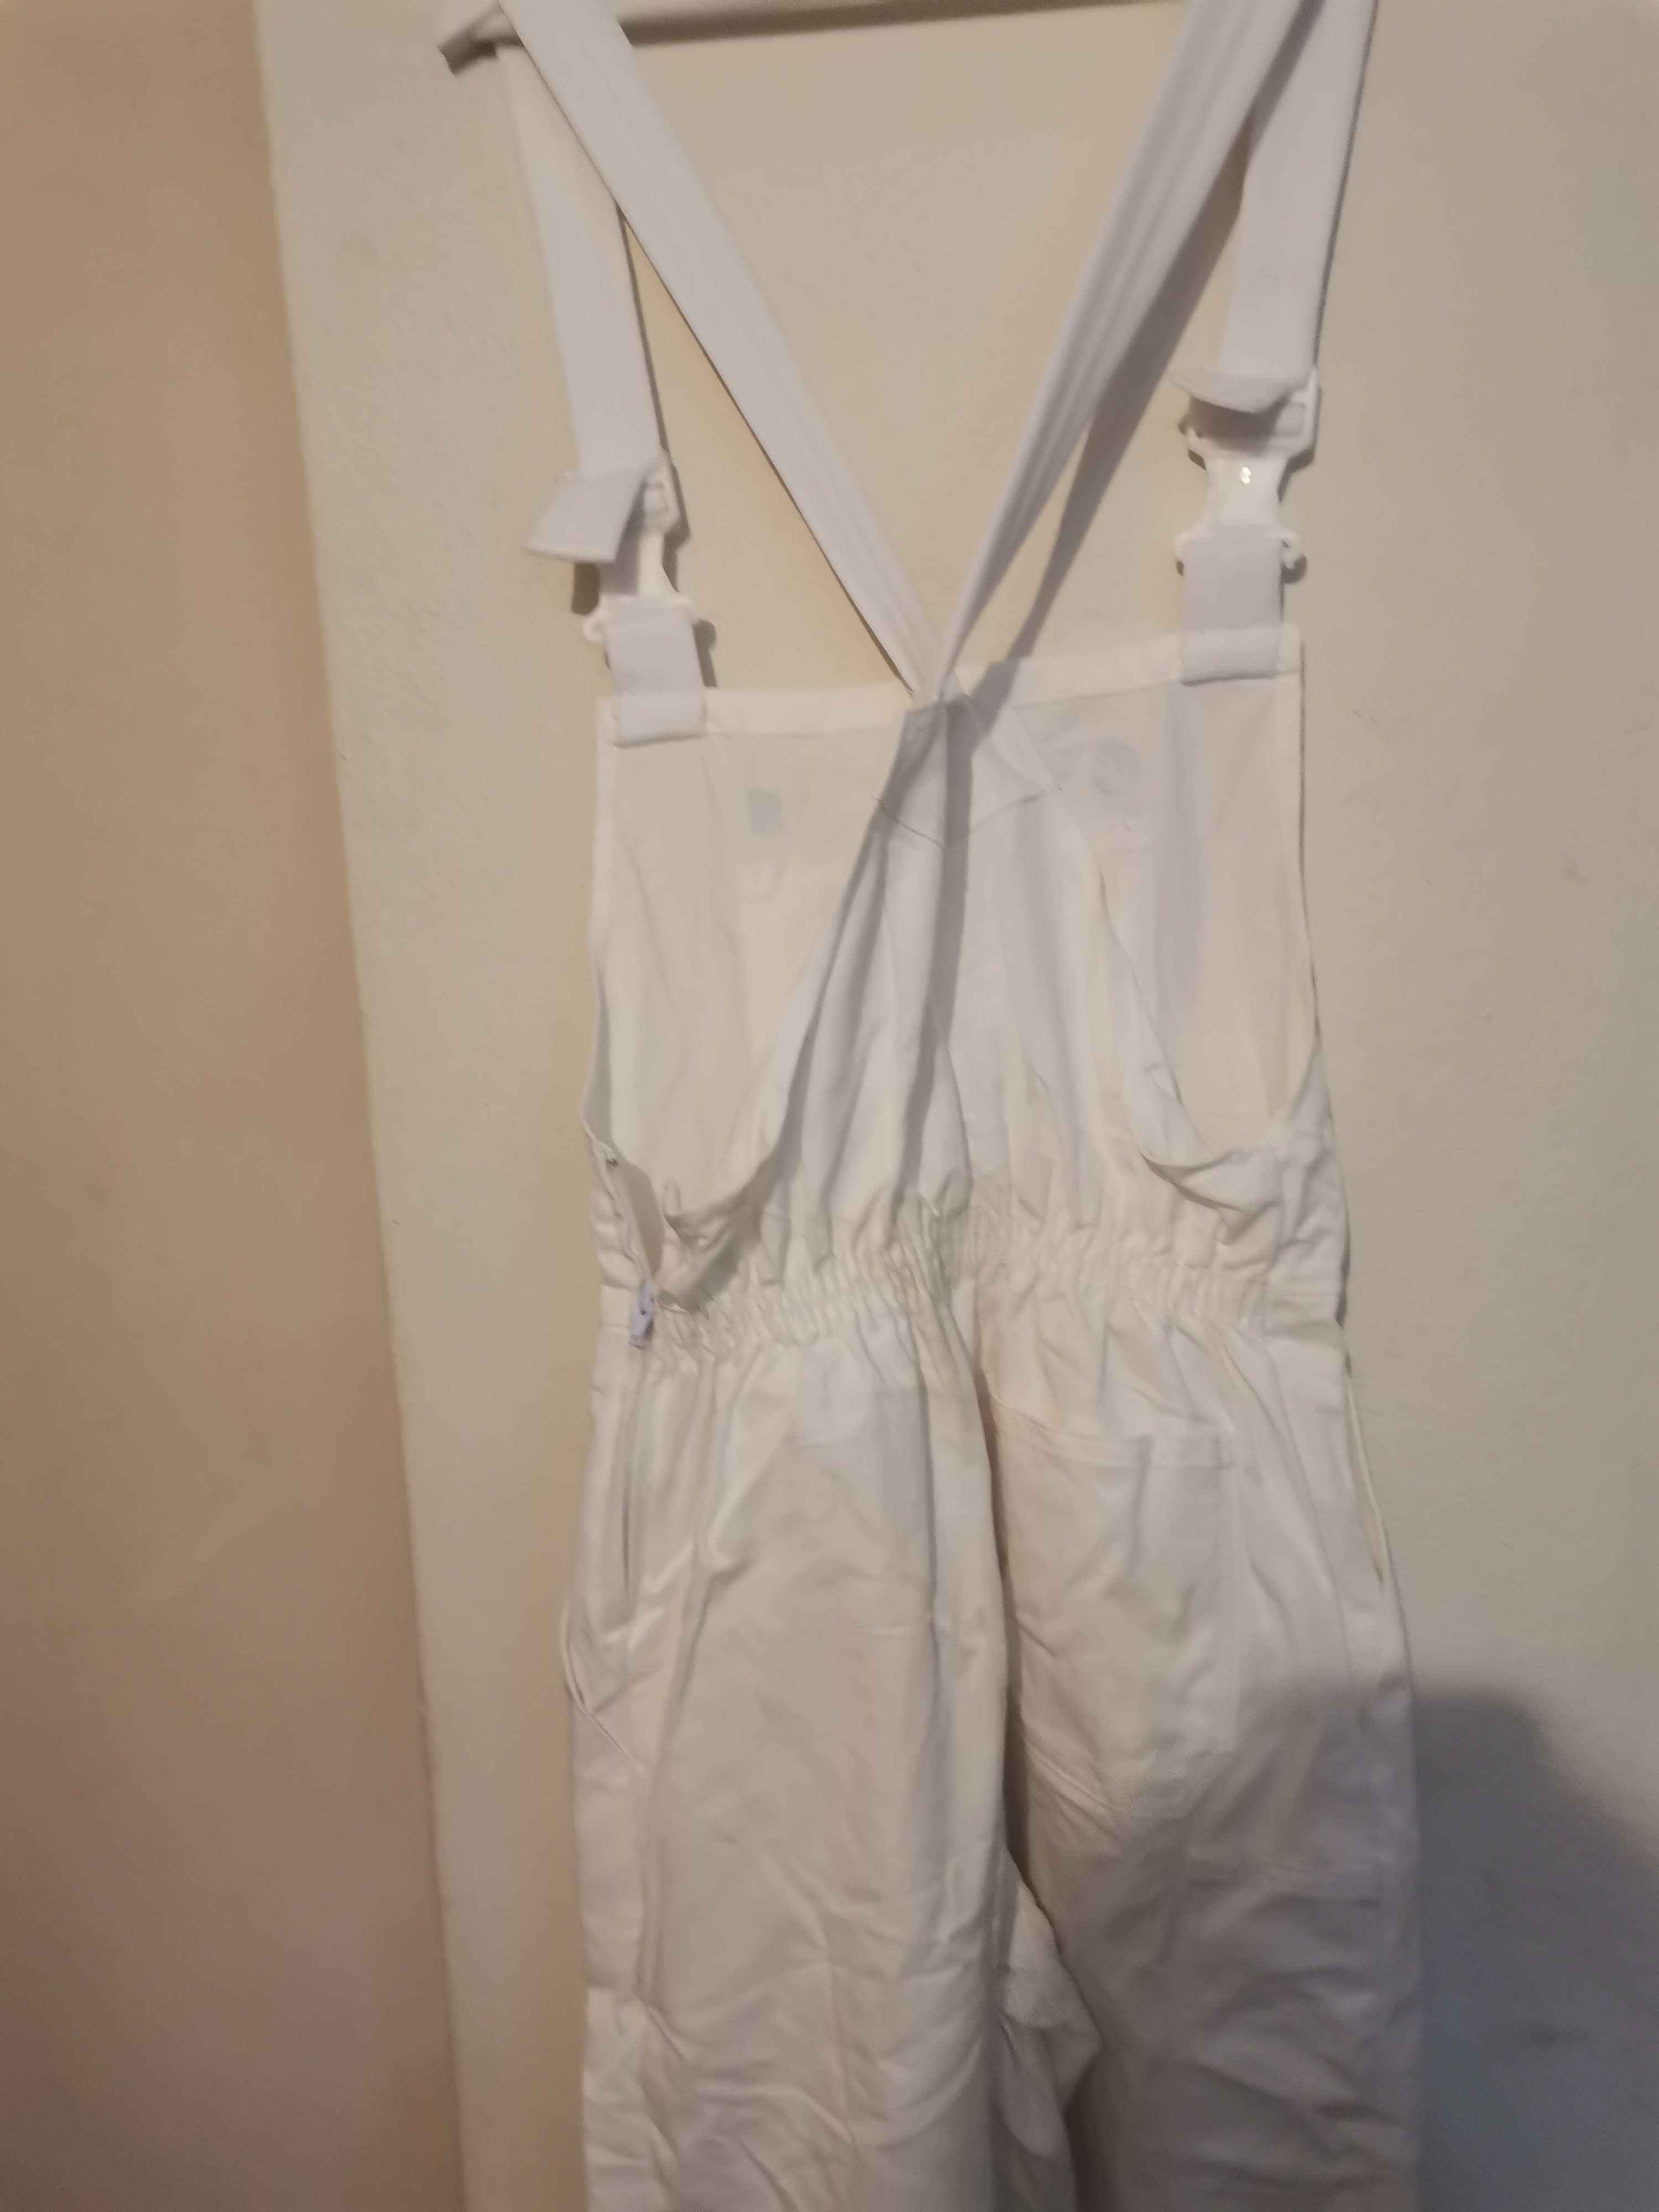 Nowe białe spodnie ogrodniczki  uniform   klm kleding  r. 40